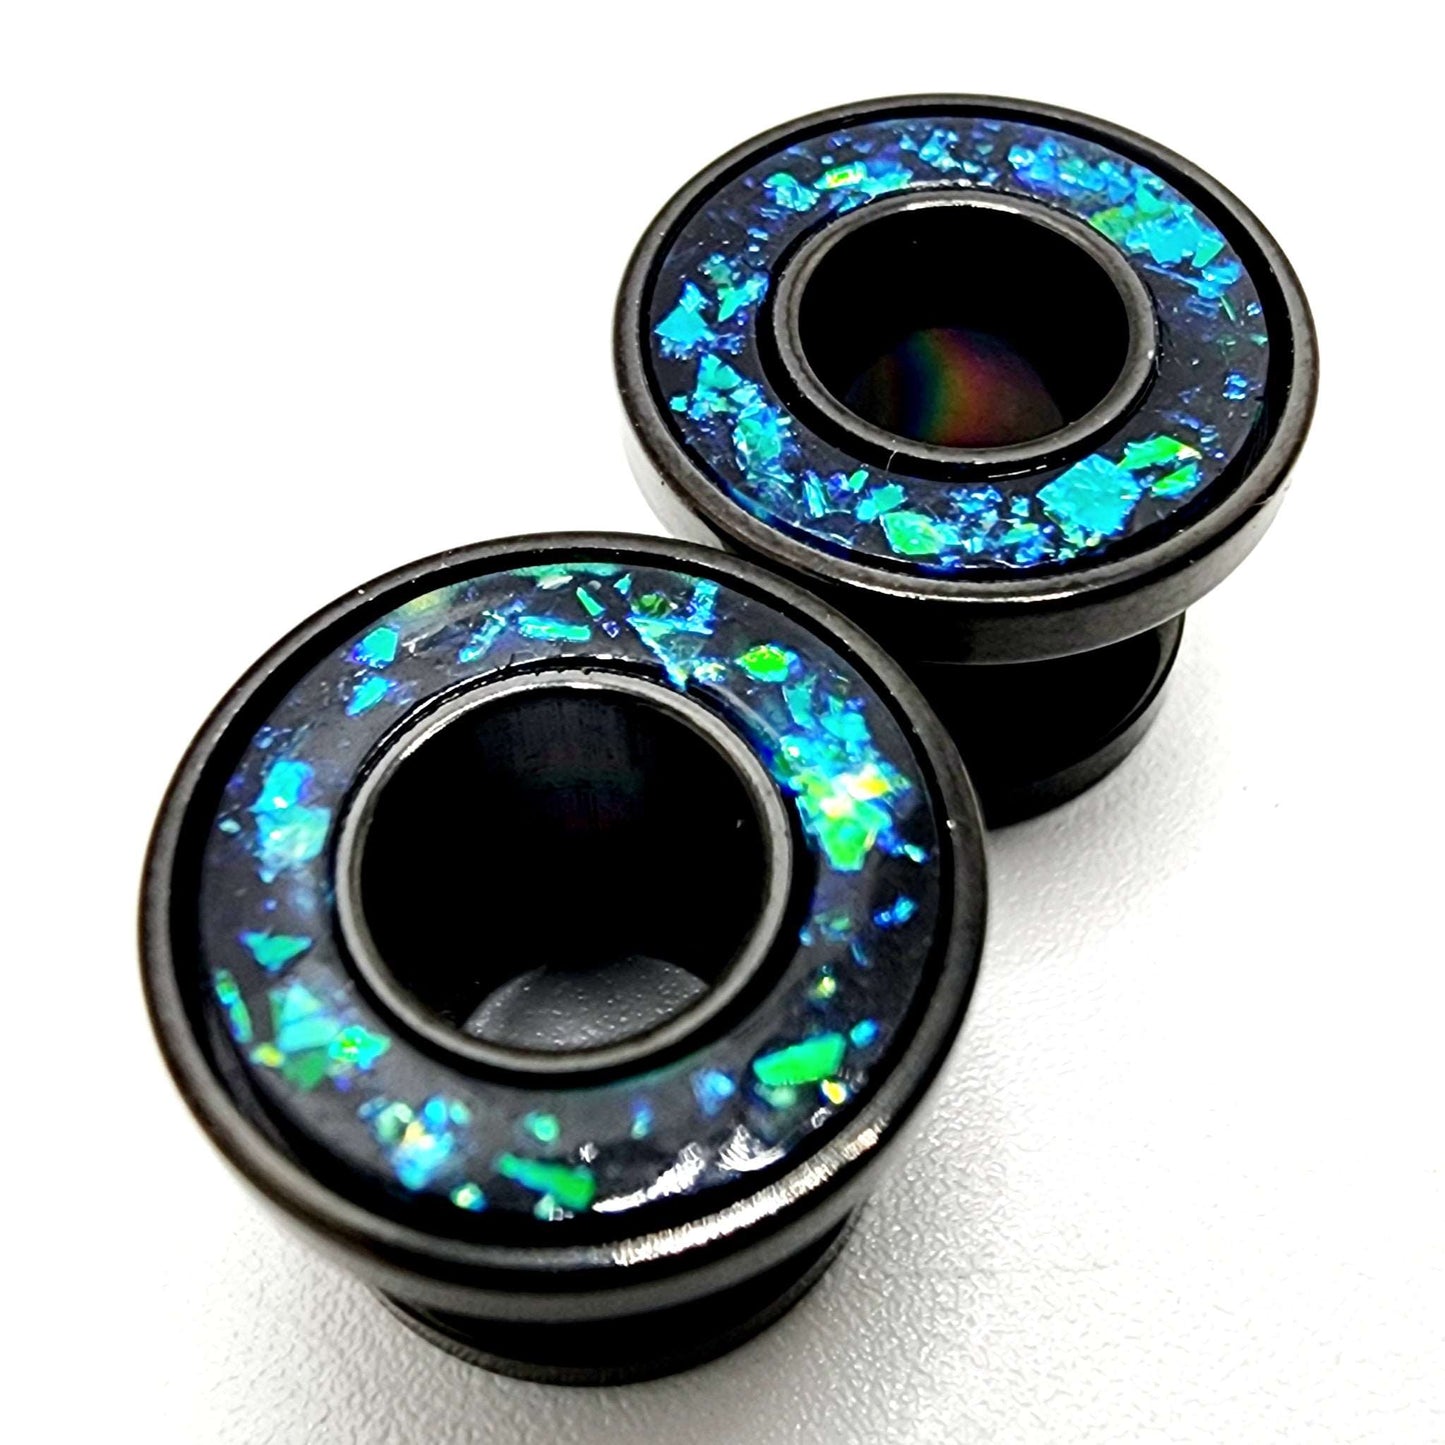 Blue/Green Opal & Black Ear Tunnels shop.AxeDr.com Body Jewelry, Ear Guages, Ear Tunnels, Plugs